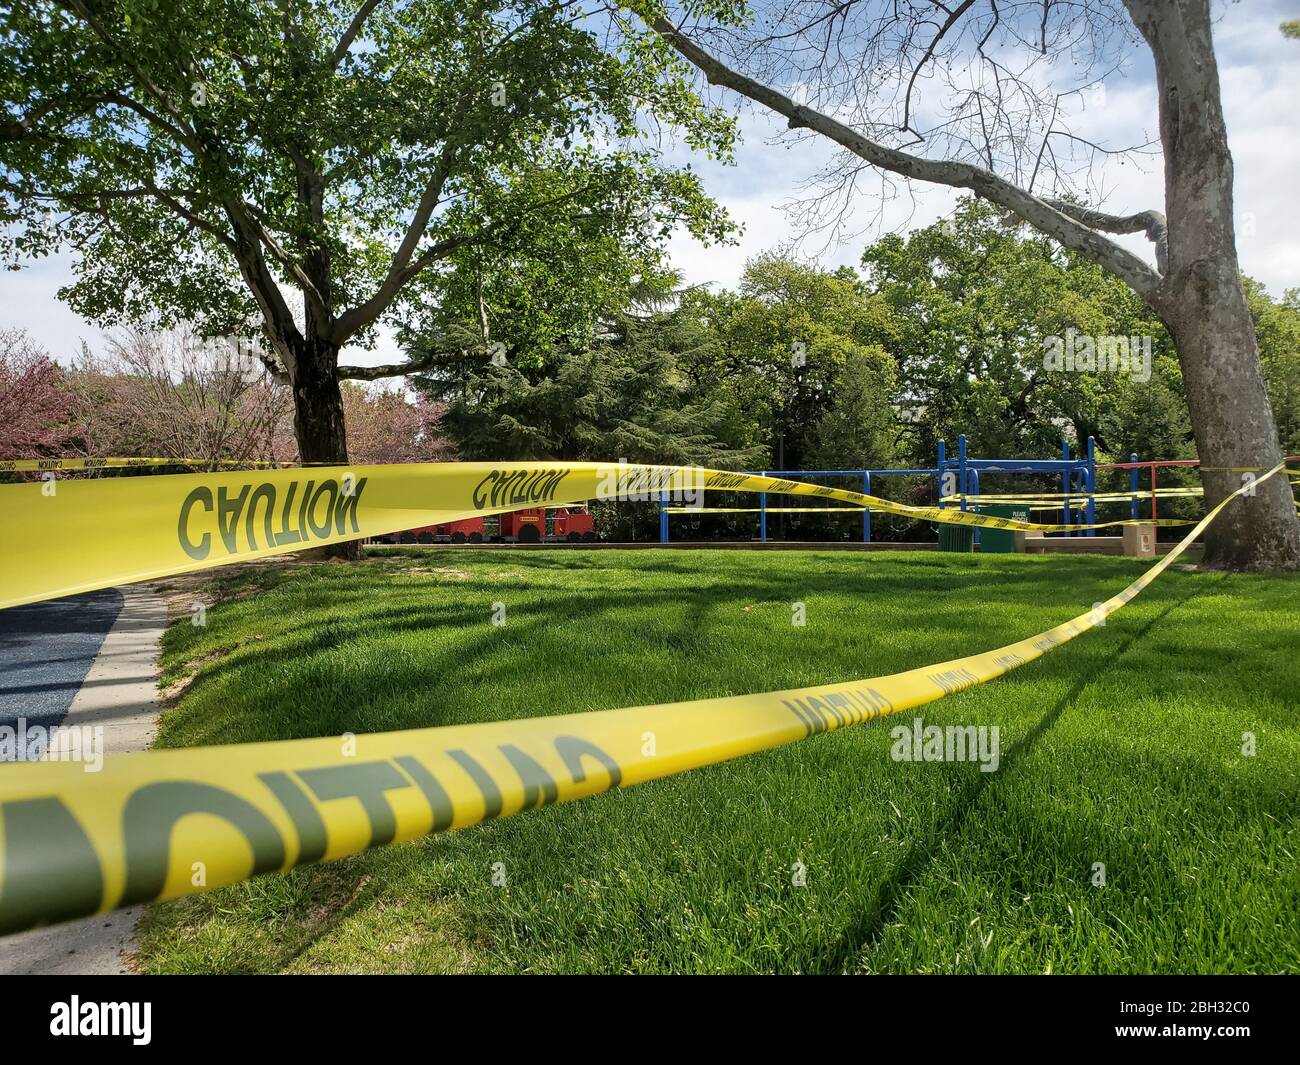 Nastro di attenzione e segnali sono visibili in un parco giochi chiuso durante uno scoppio di coronavirus COVID-19 a Walnut Creek, California, 8 aprile 2020. () Foto Stock